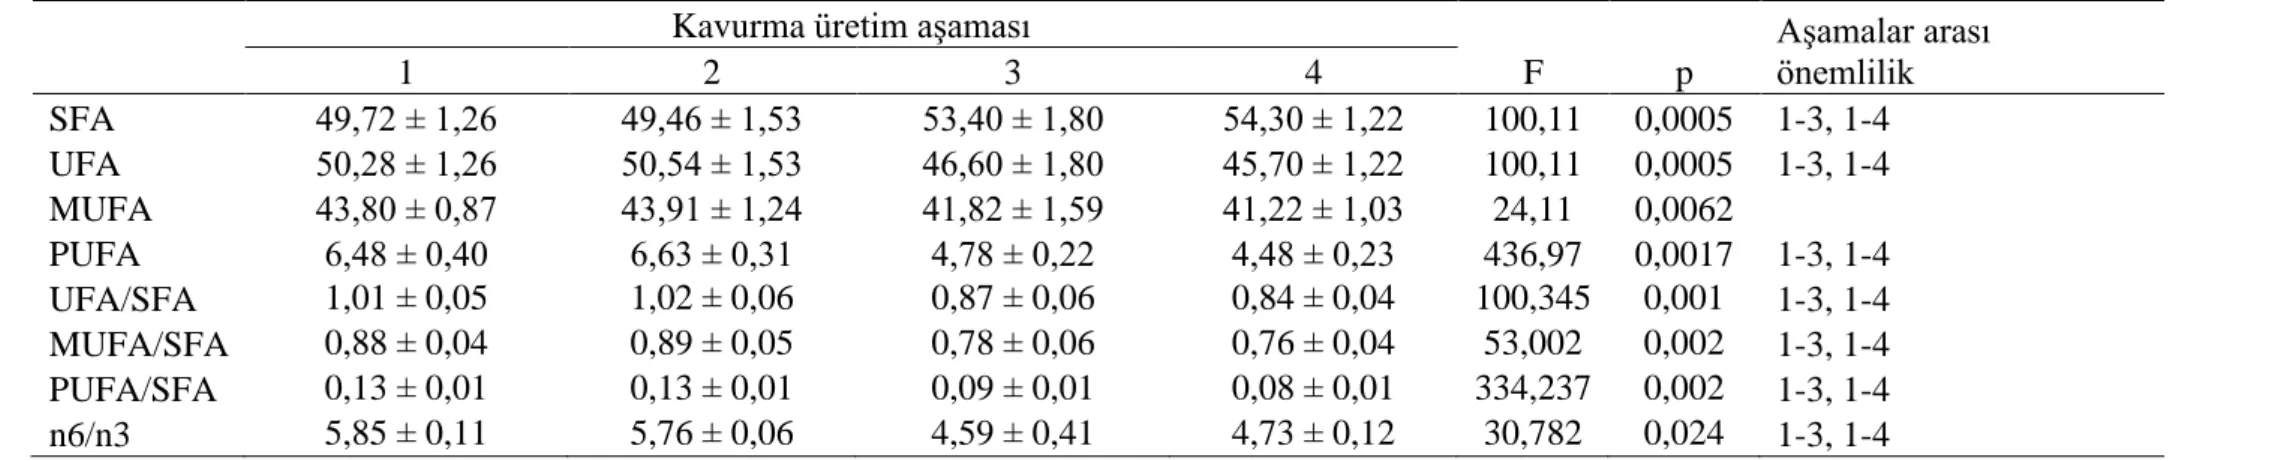 Çizelge  3.4.2.  Kavurmanın  üretim  aşamalarında  TBARS  (mg  MDA/kg),  peroksit  değeri  (PD,  meq  O 2 /kg  yağ)  ve  asitlik  değerindeki          (g oleik asit/kg yağ) değişimler (ortalama±standart sapma) ve istatistik değerlendirmeler